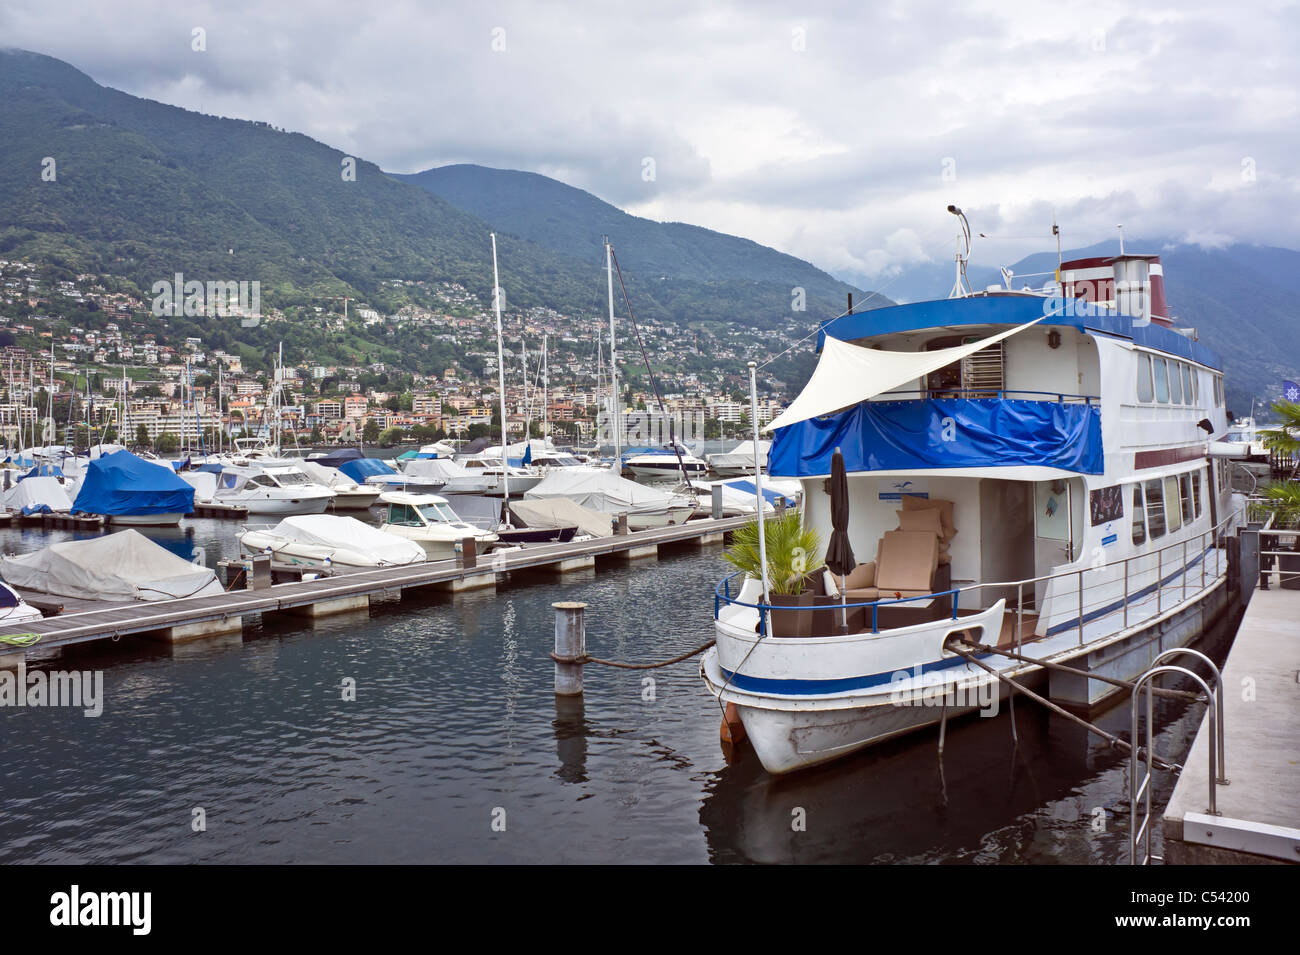 Ristorante Balena auf einem Boot vor Anker im Hafen von Locarno am Lago  Maggiore in der Schweiz Stockfotografie - Alamy